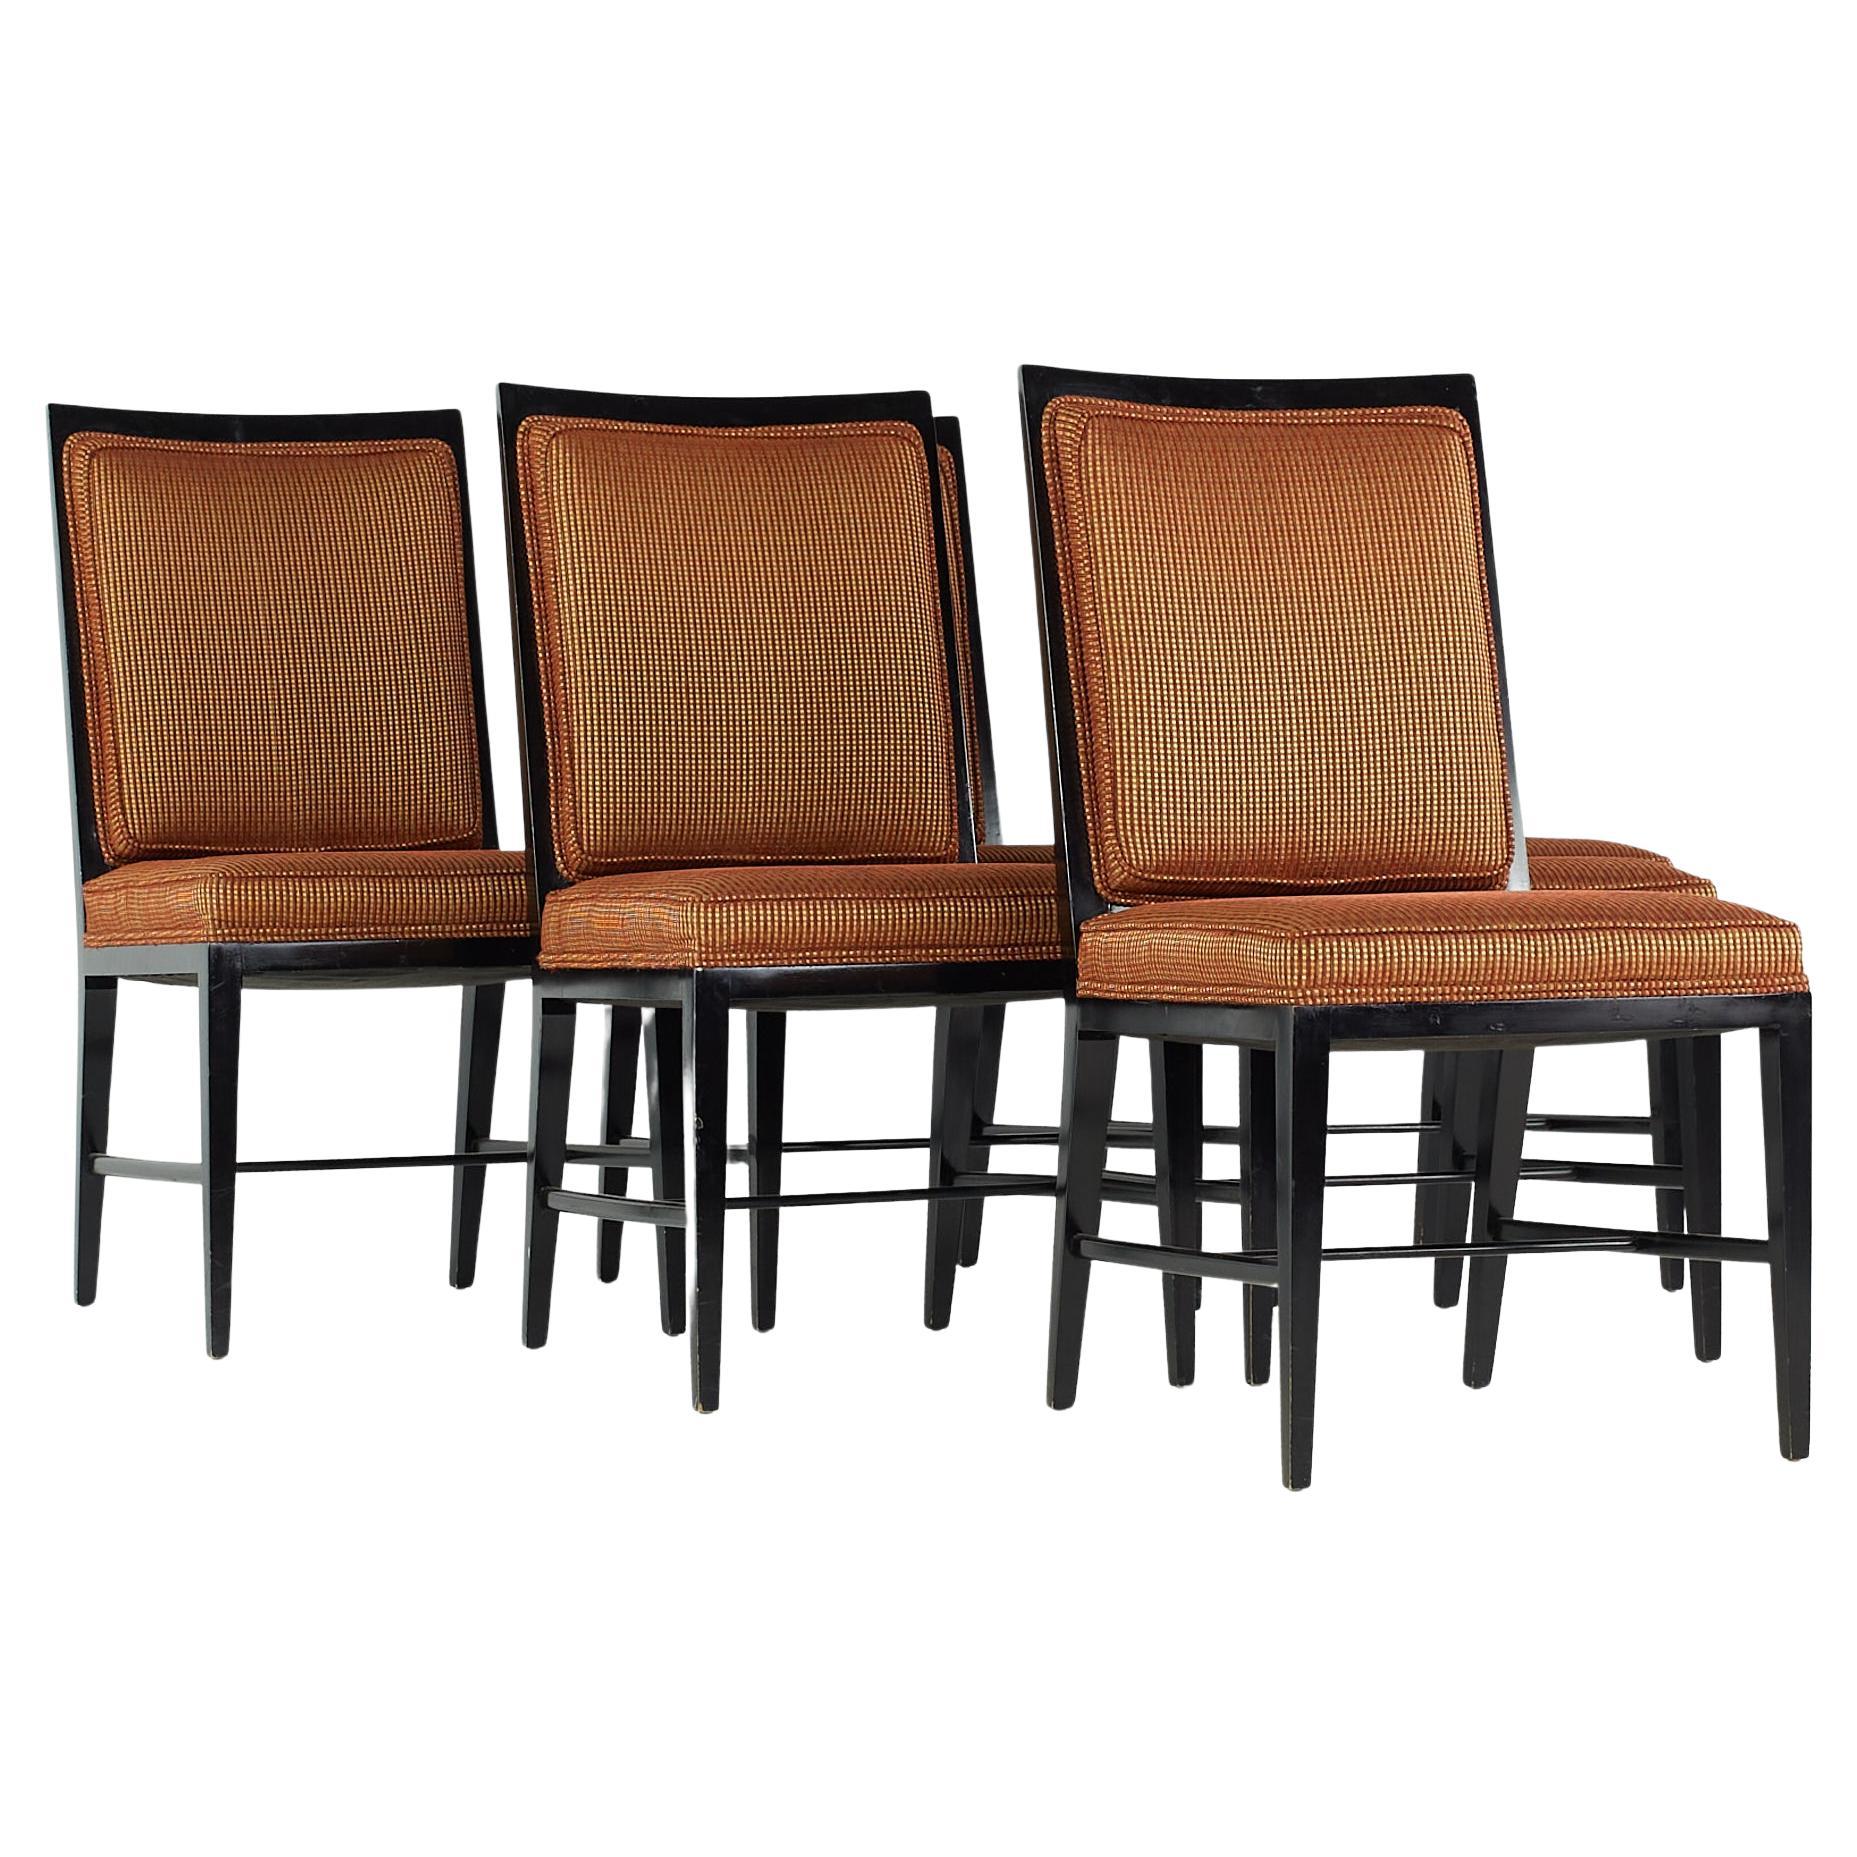 Paul McCobb Style Midcentury Ebonized Dining Chairs, Set of 6